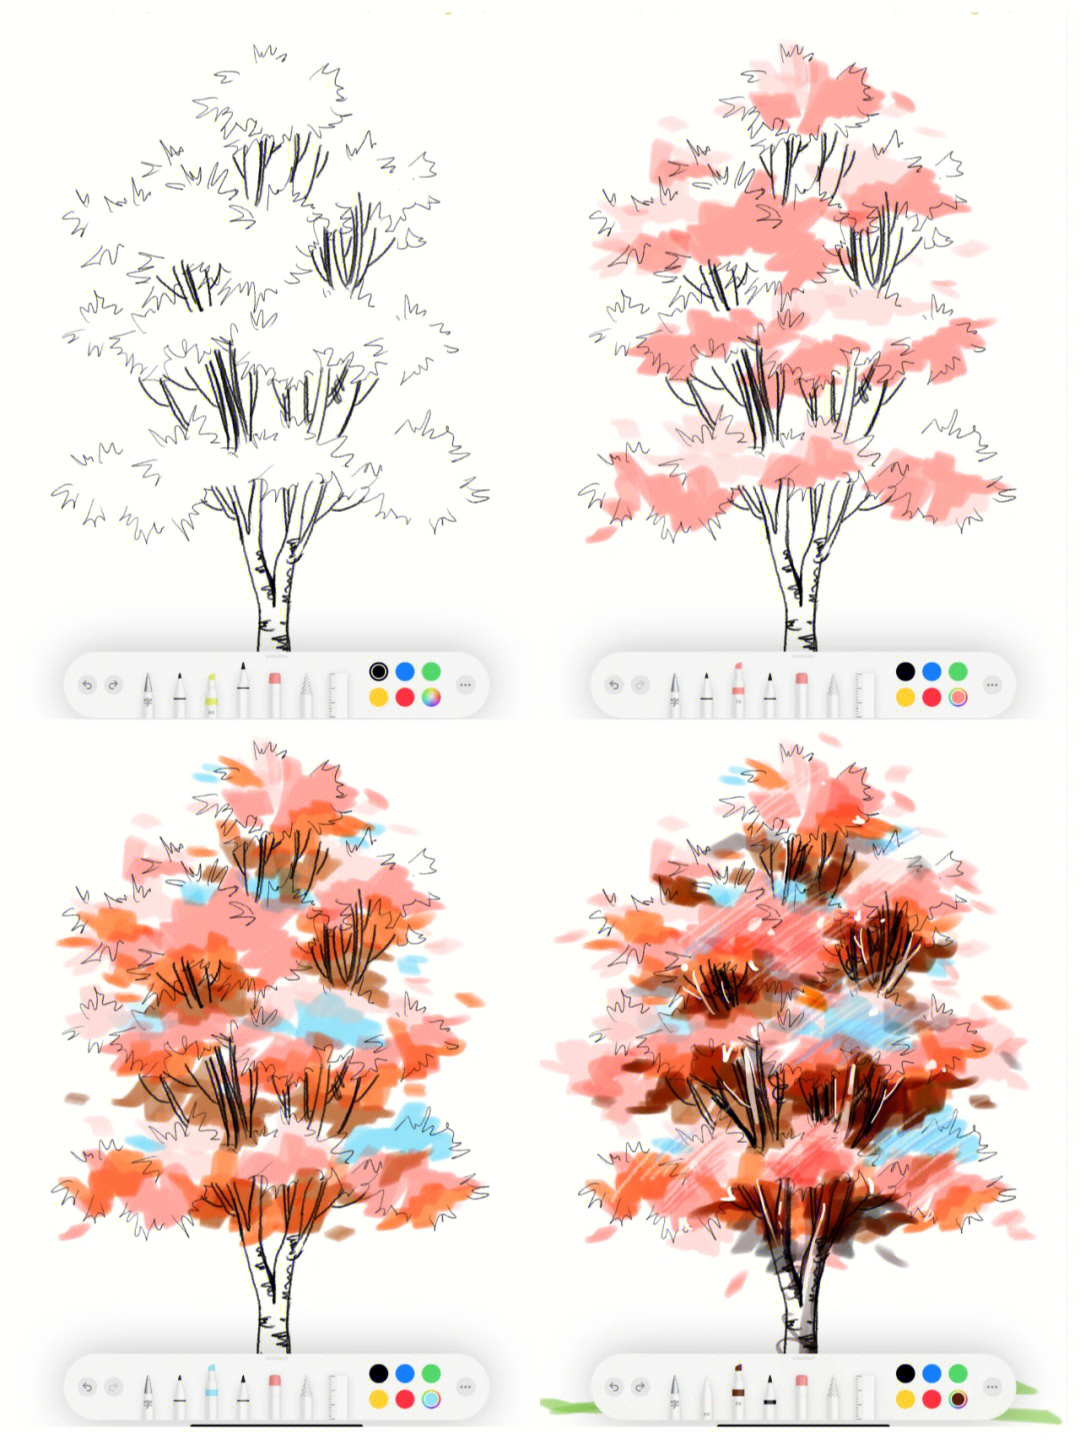 马克笔画树教程图片